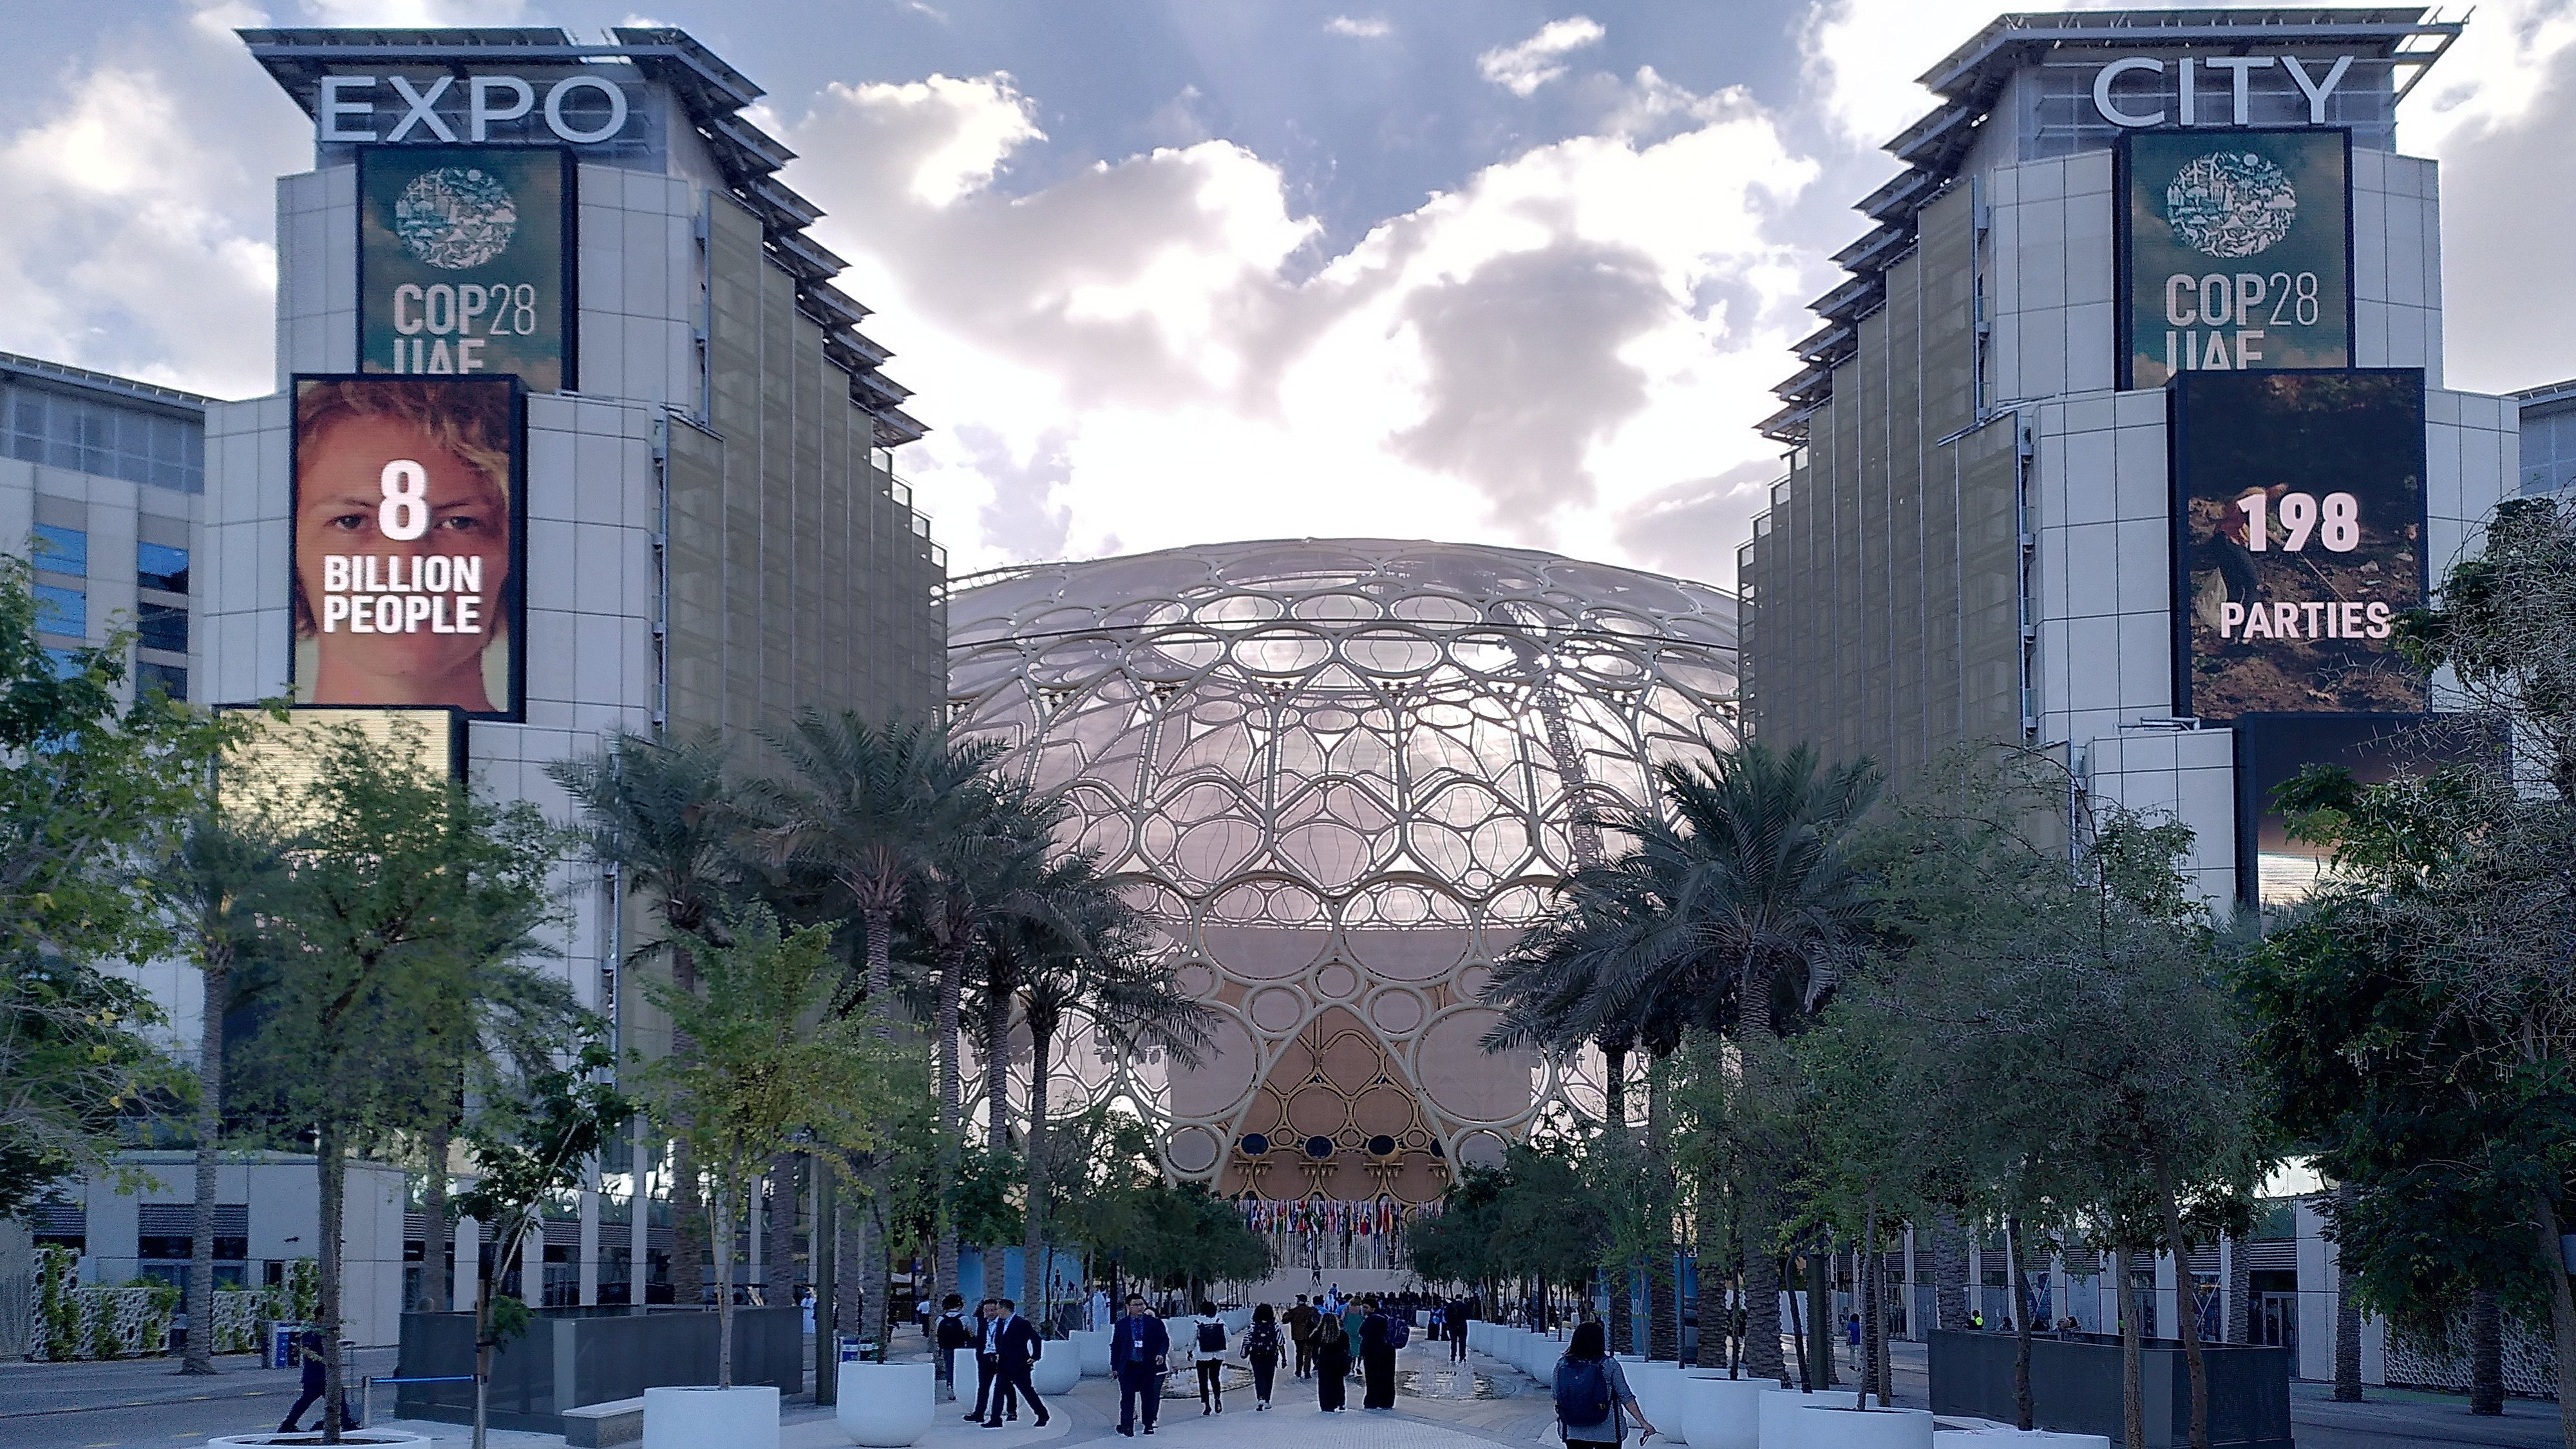 Entrance to Expo City in Dubai.